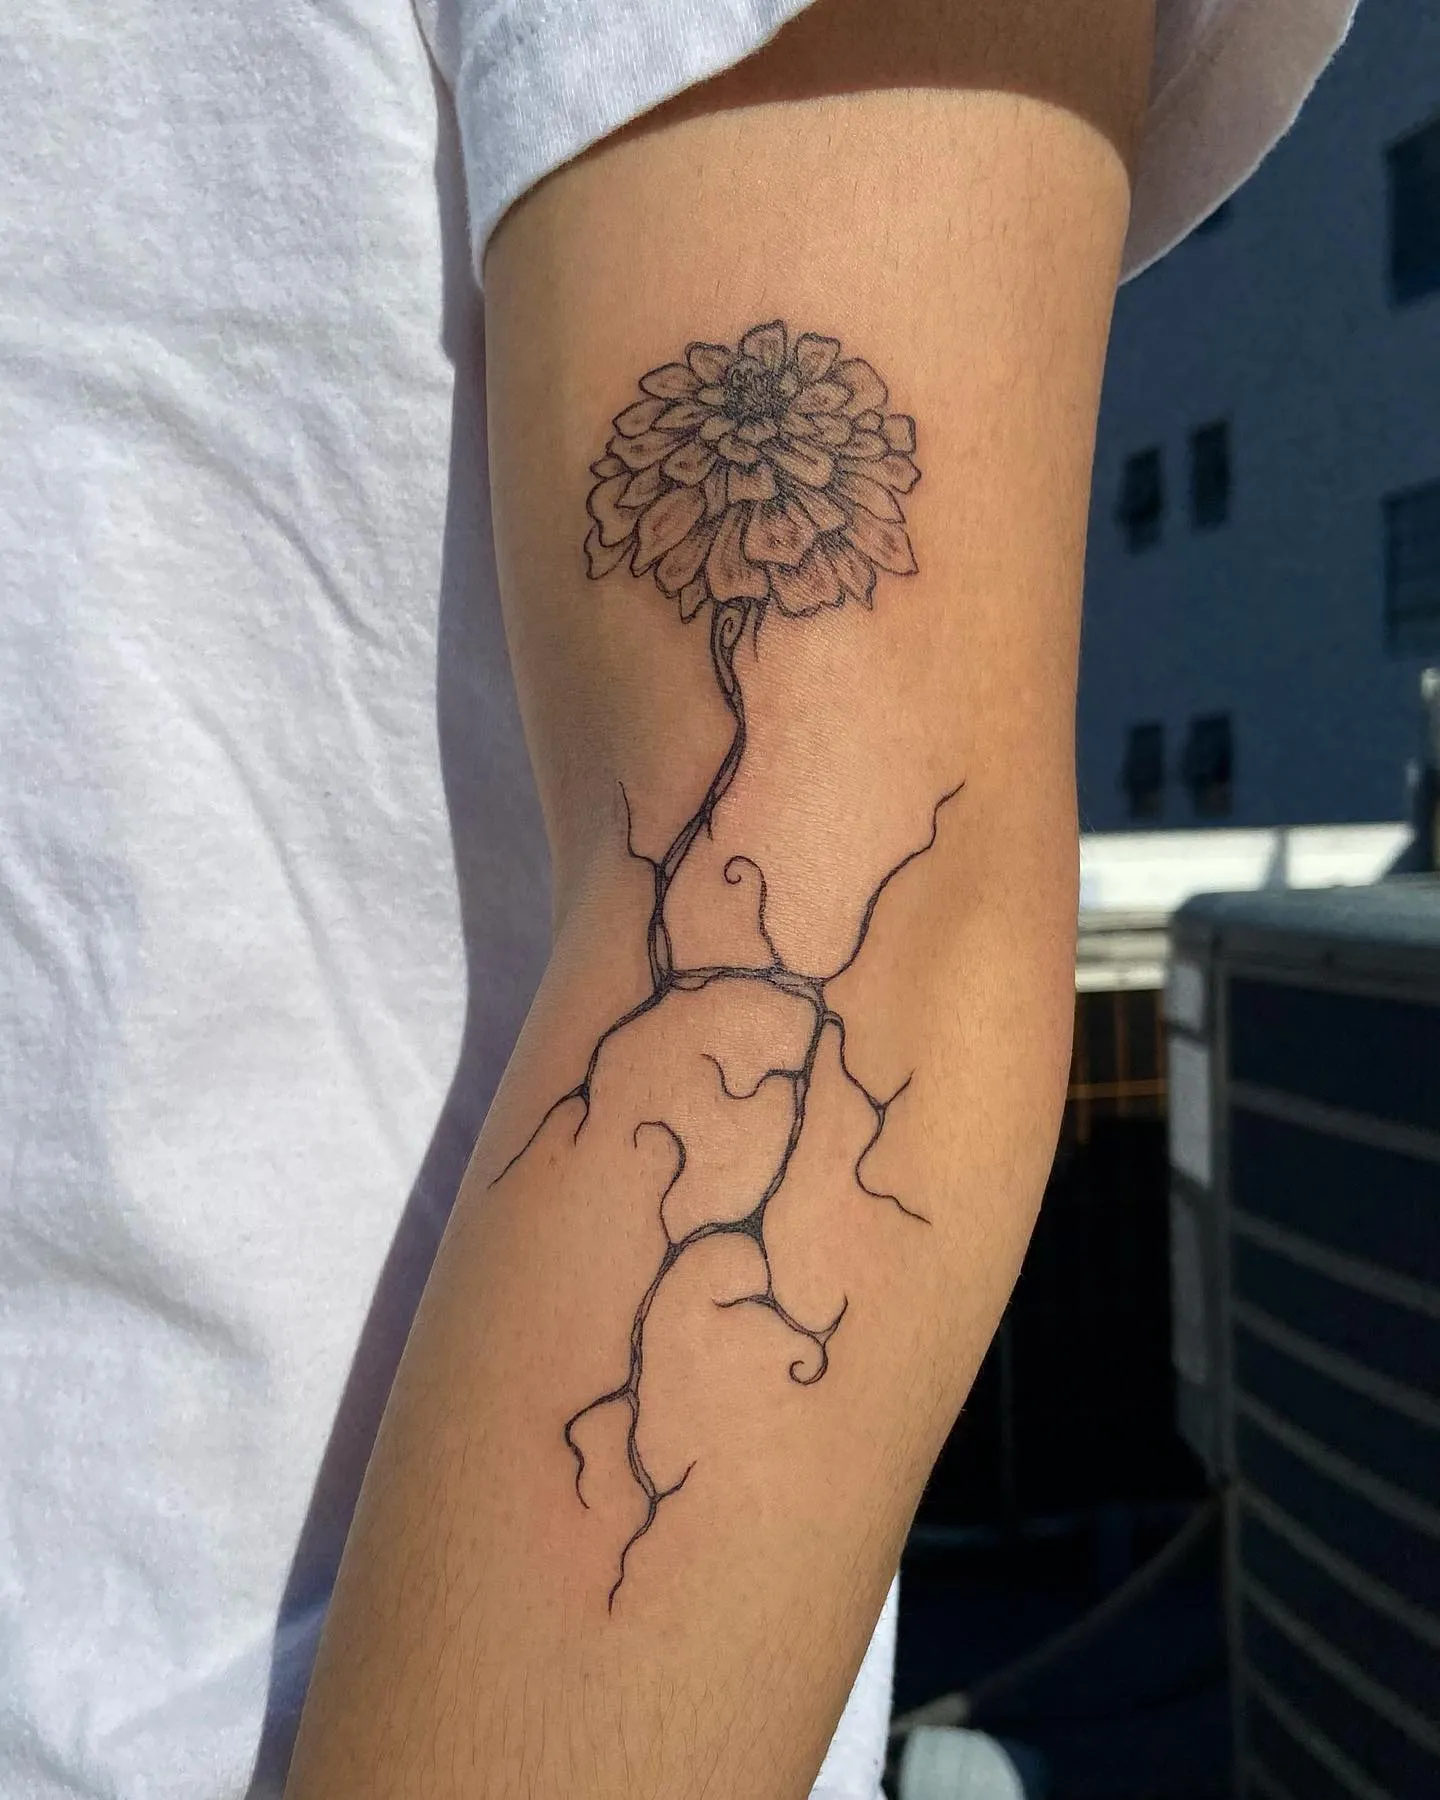 Zinnia bloom linework tattoo on arm